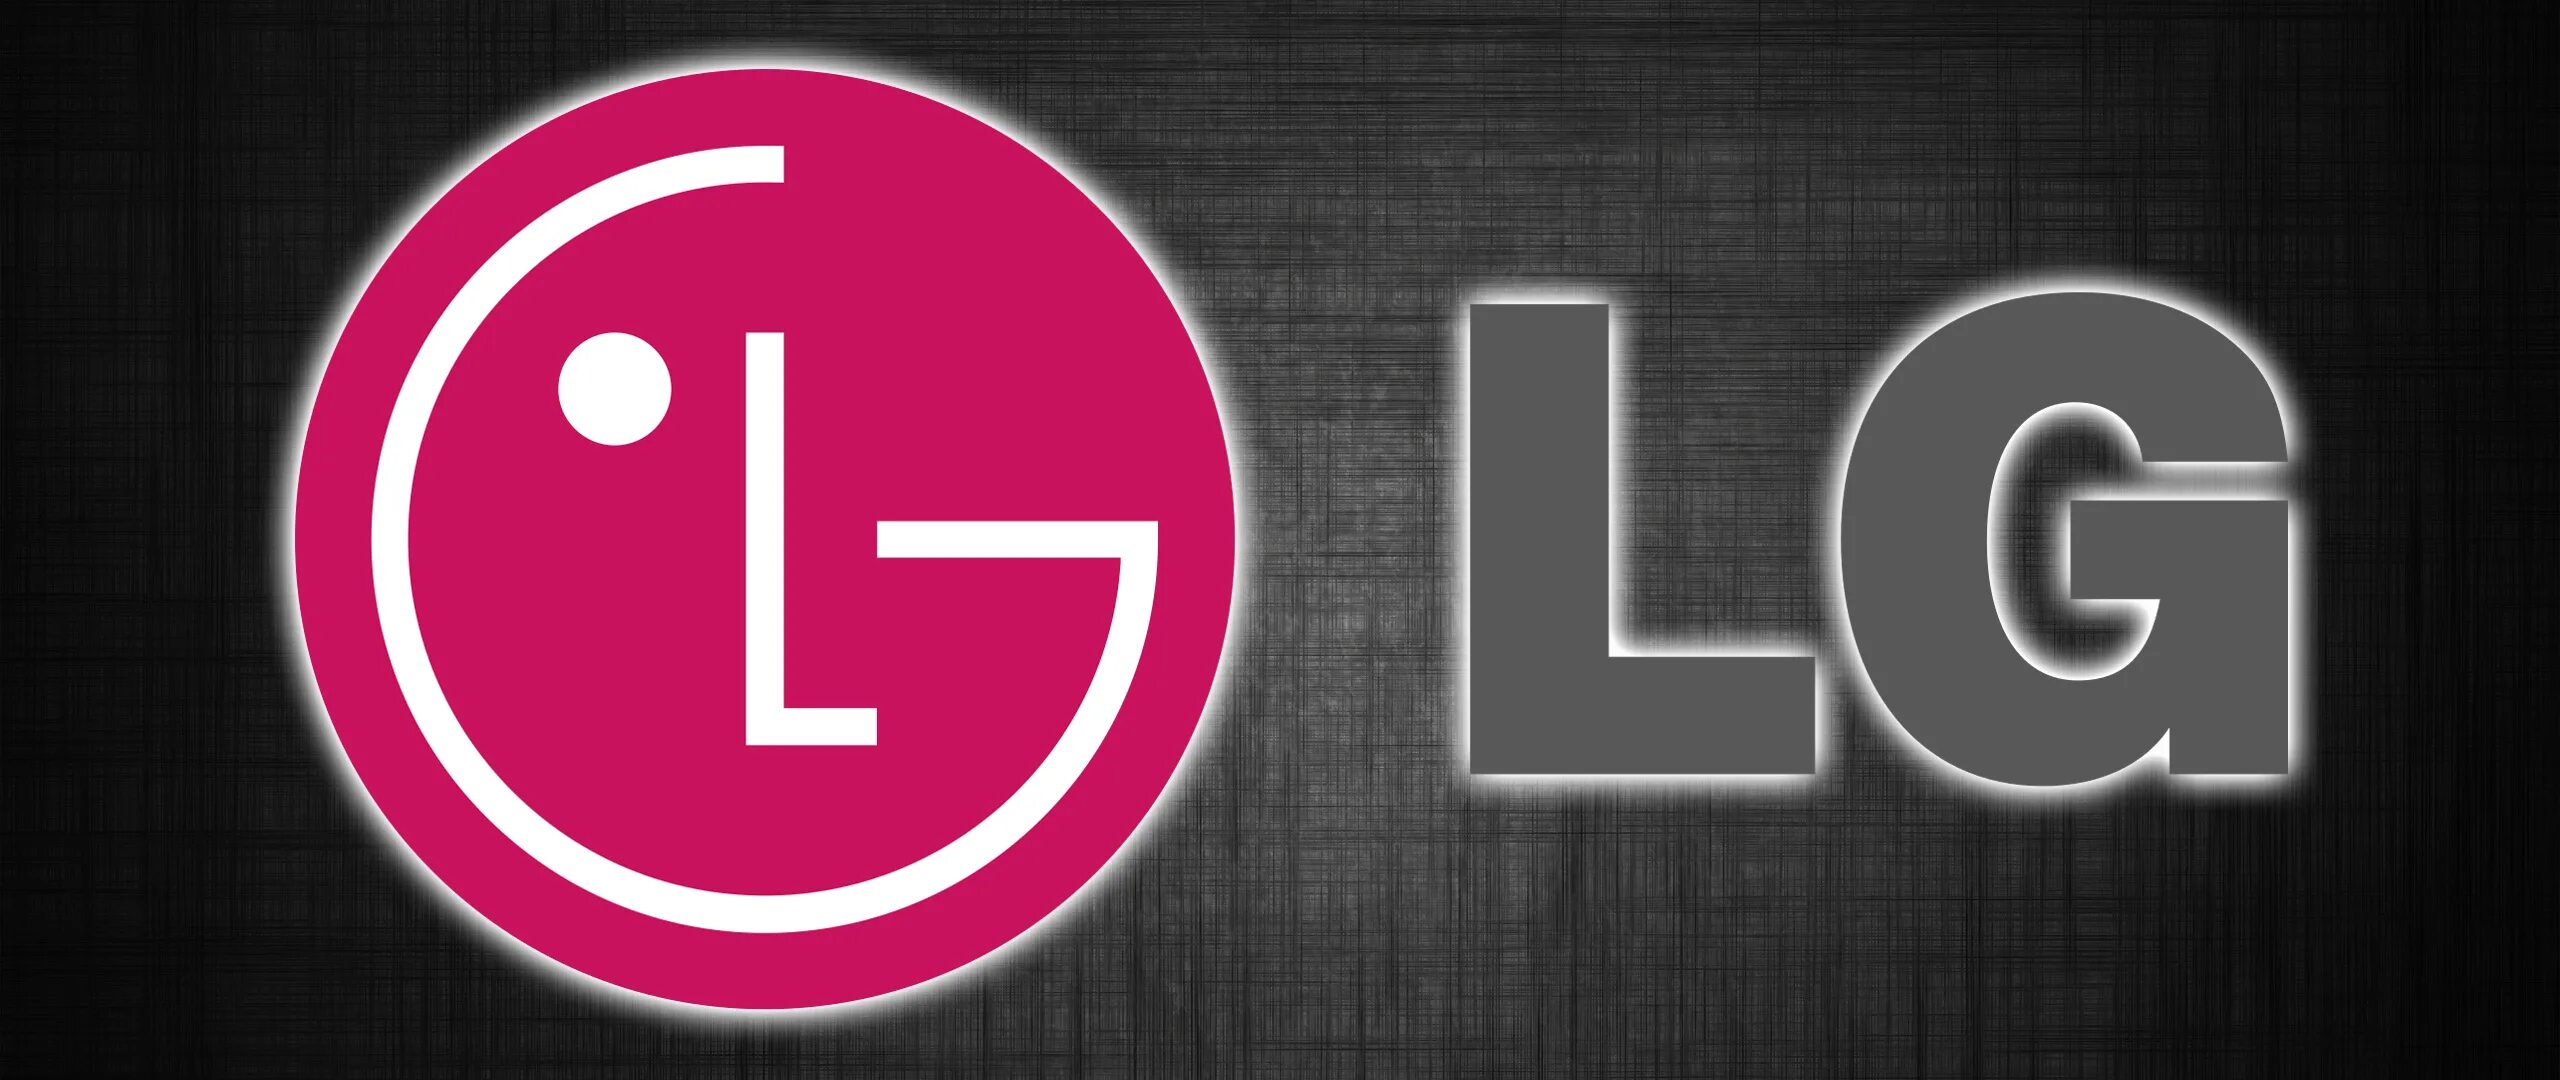 LG logo 2014. Первый логотип LG. ТВ В LG логотип. Красивый логотип LG.